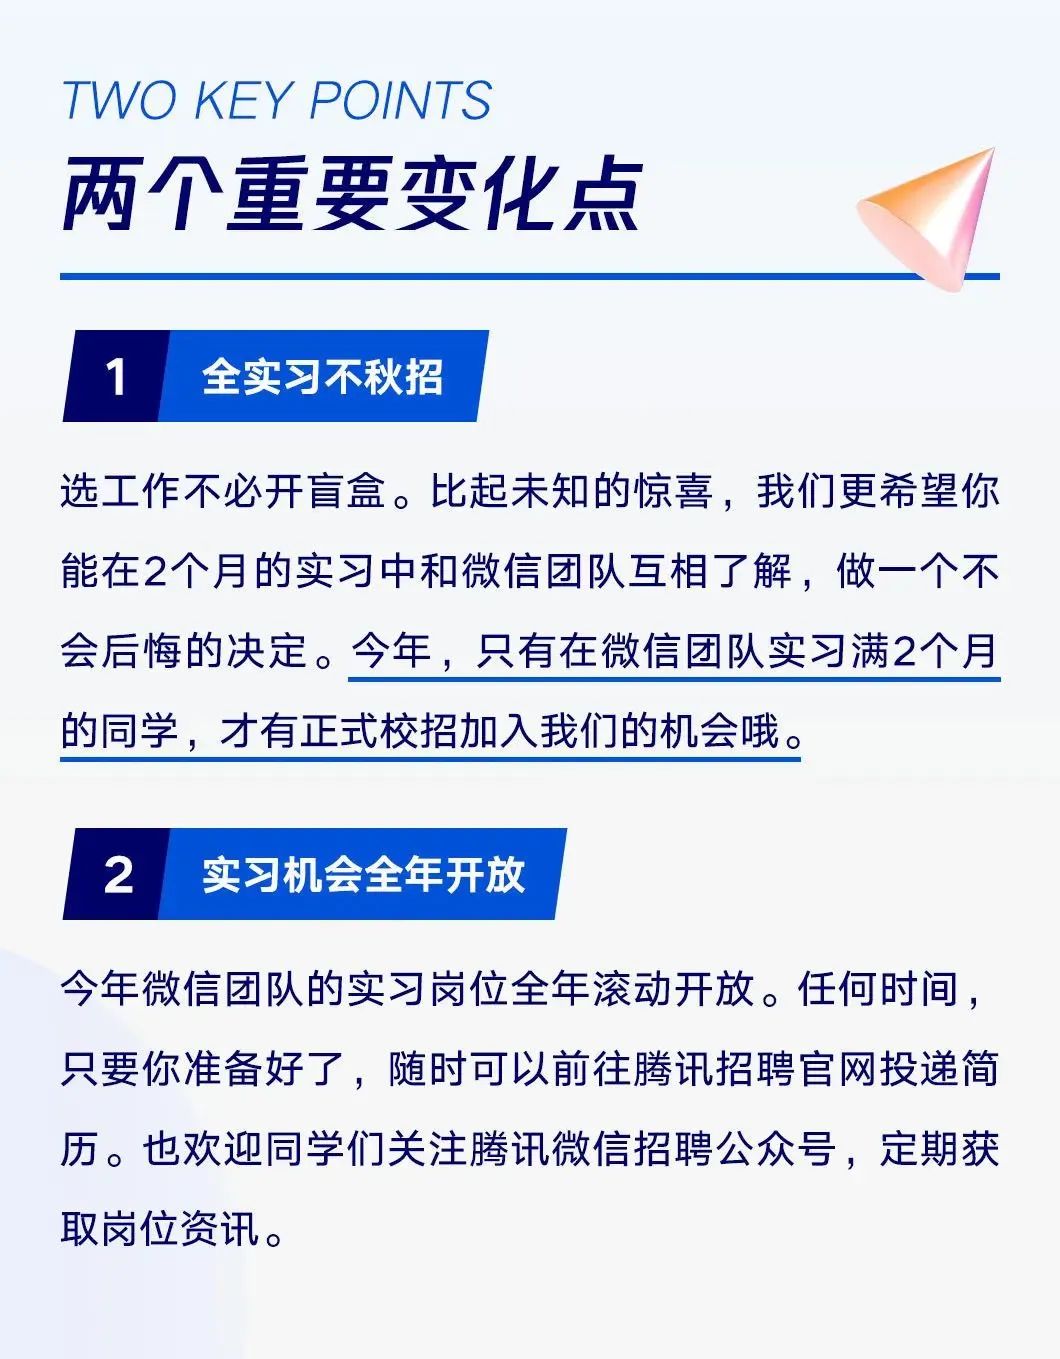 騰訊微信,今年取消了24屆秋招